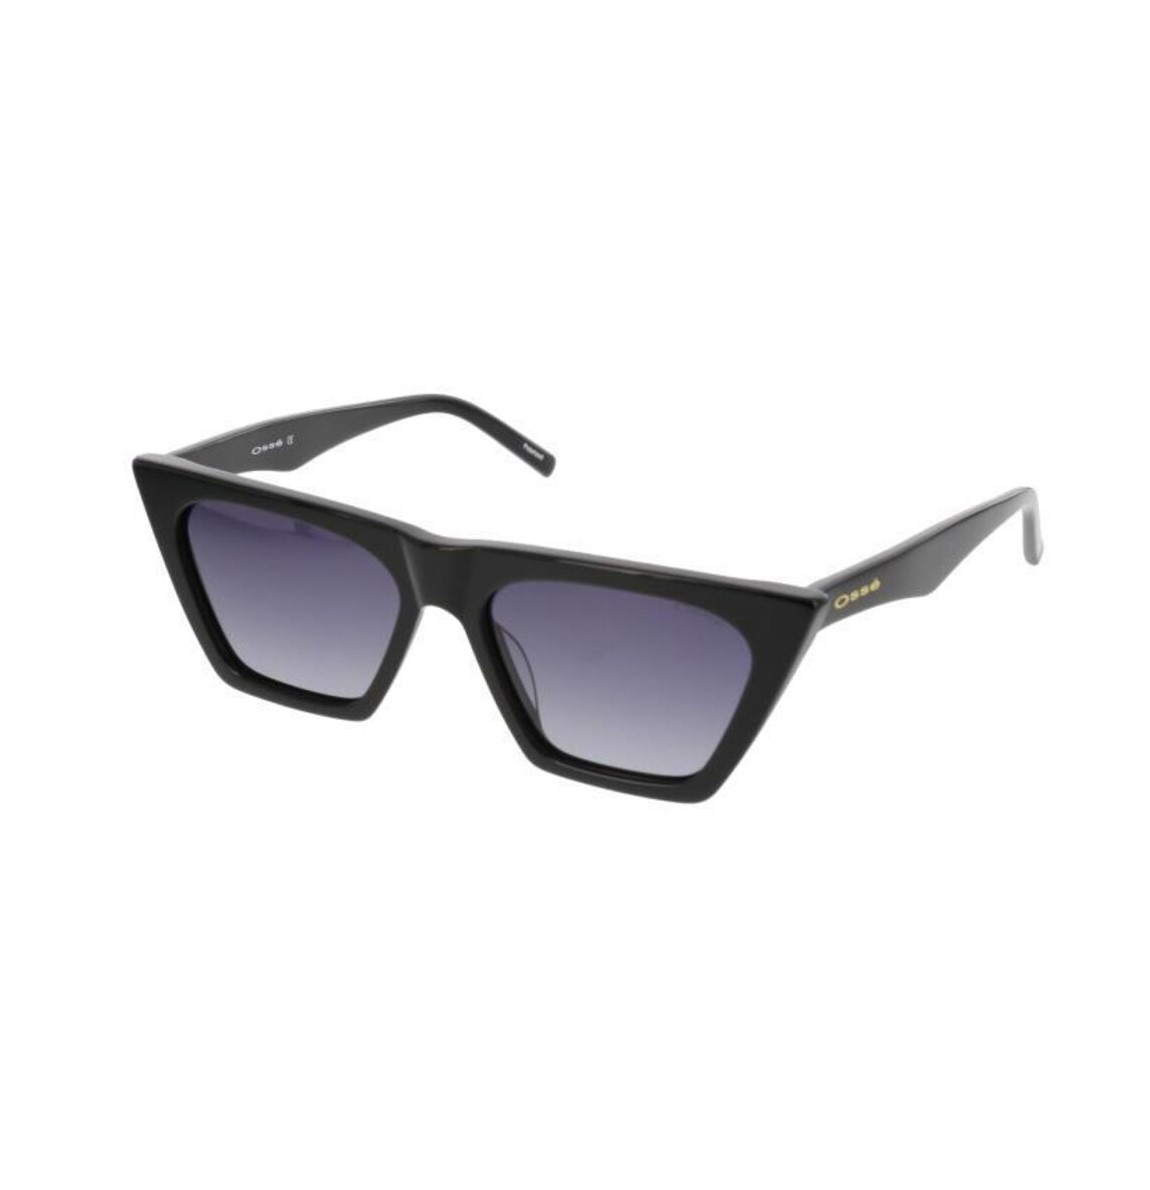 Сонцезахисні окуляри OSSE OS3028 C 01